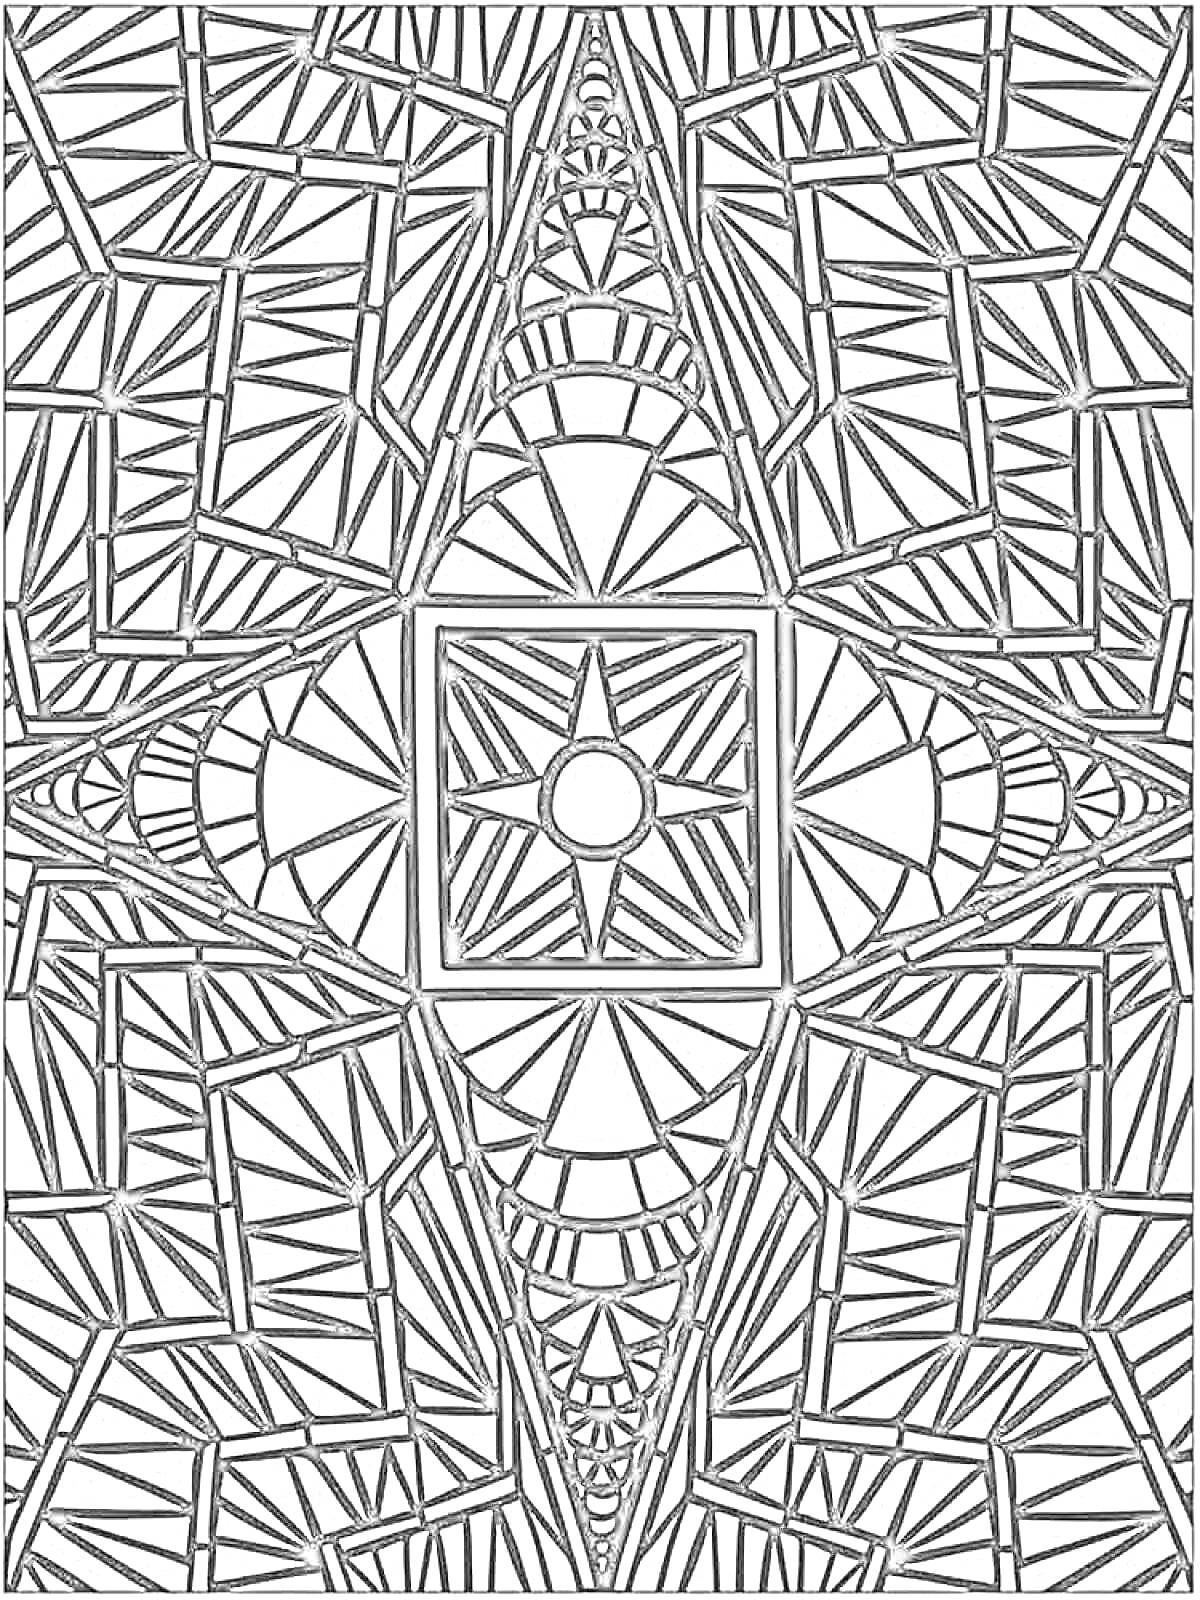 Раскраска Мозаика антистресс с центром в виде квадрата с кругом и лучами, окружённого многочисленными треугольниками и другими геометрическими фигурами.